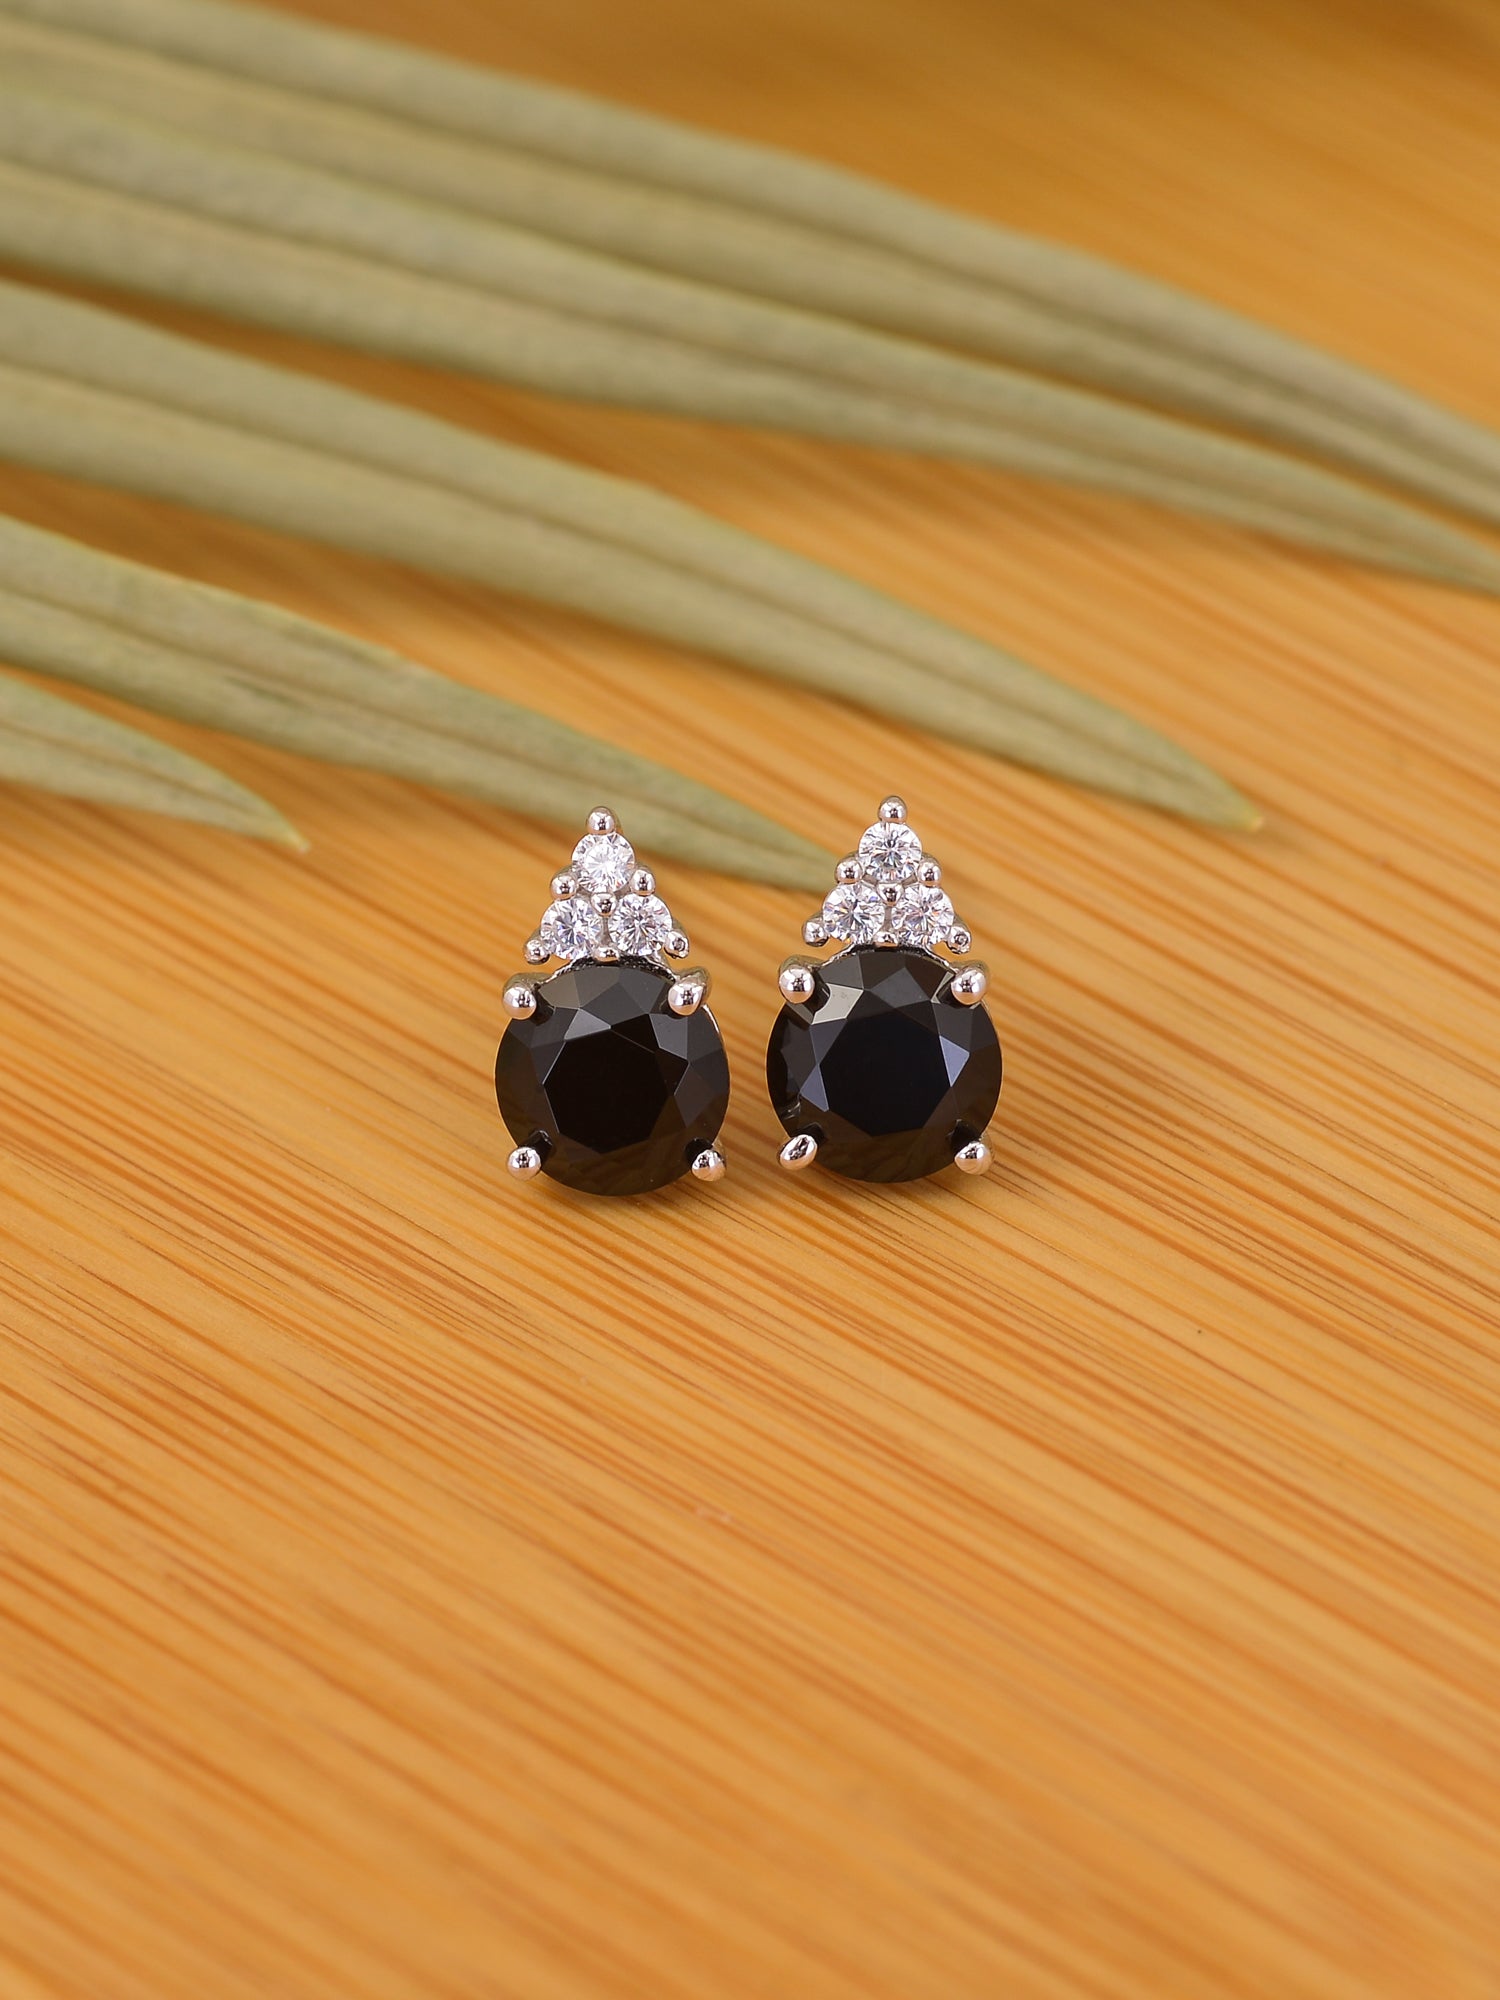 Buy Silver  Black Earrings for Women by Nemichand Jewels Online  Ajiocom